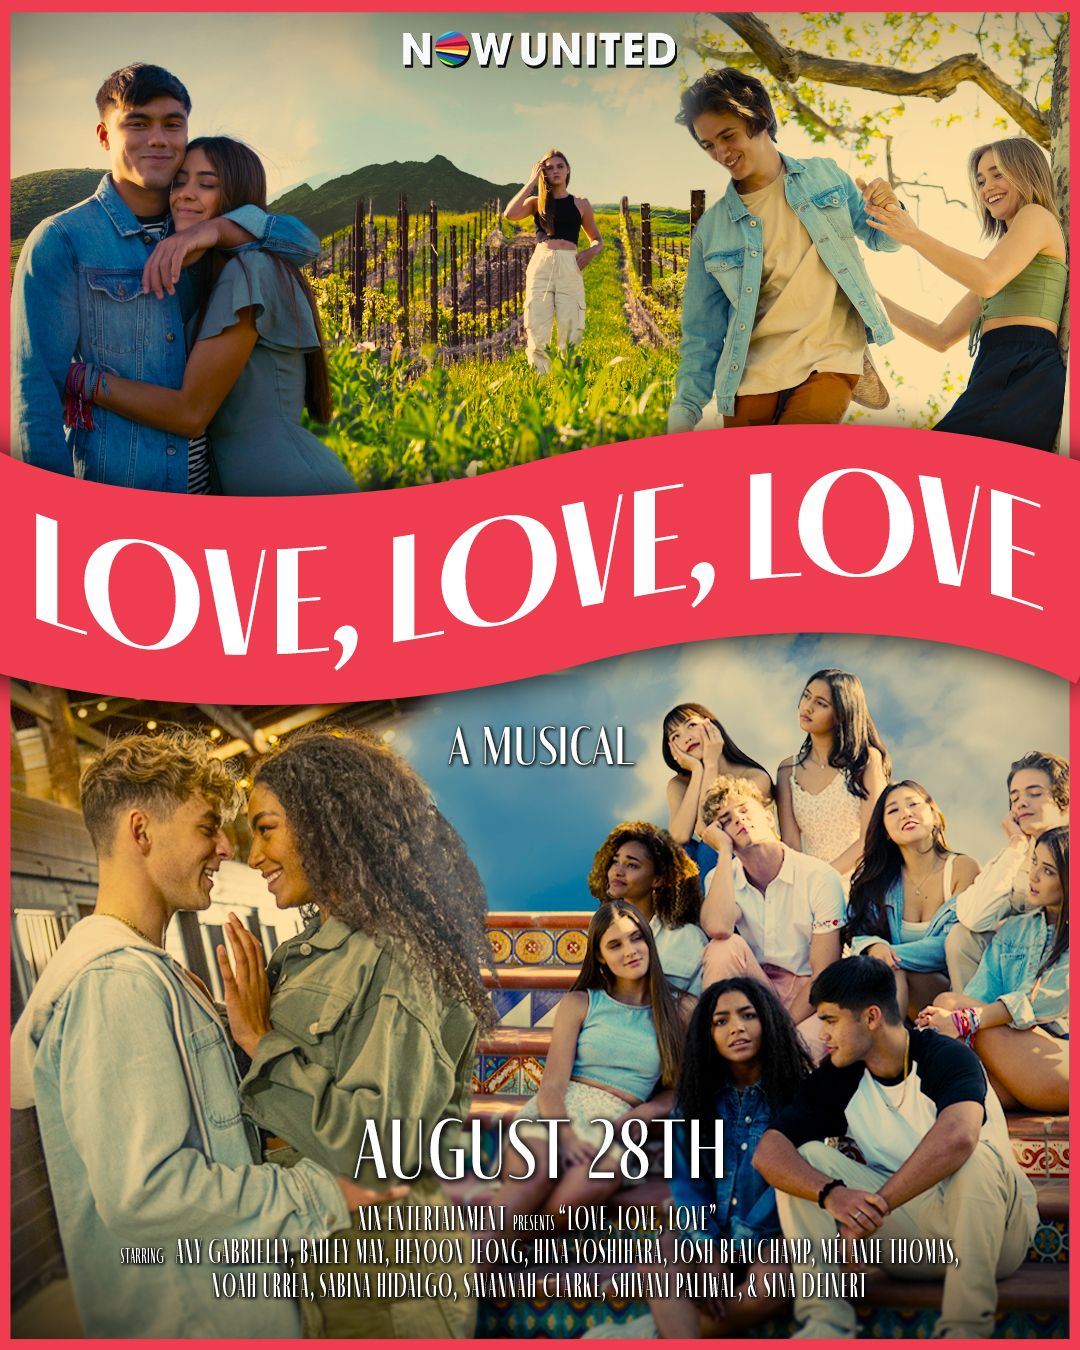 Divulgado pôster de "Love, Love, Love", filme do Now United